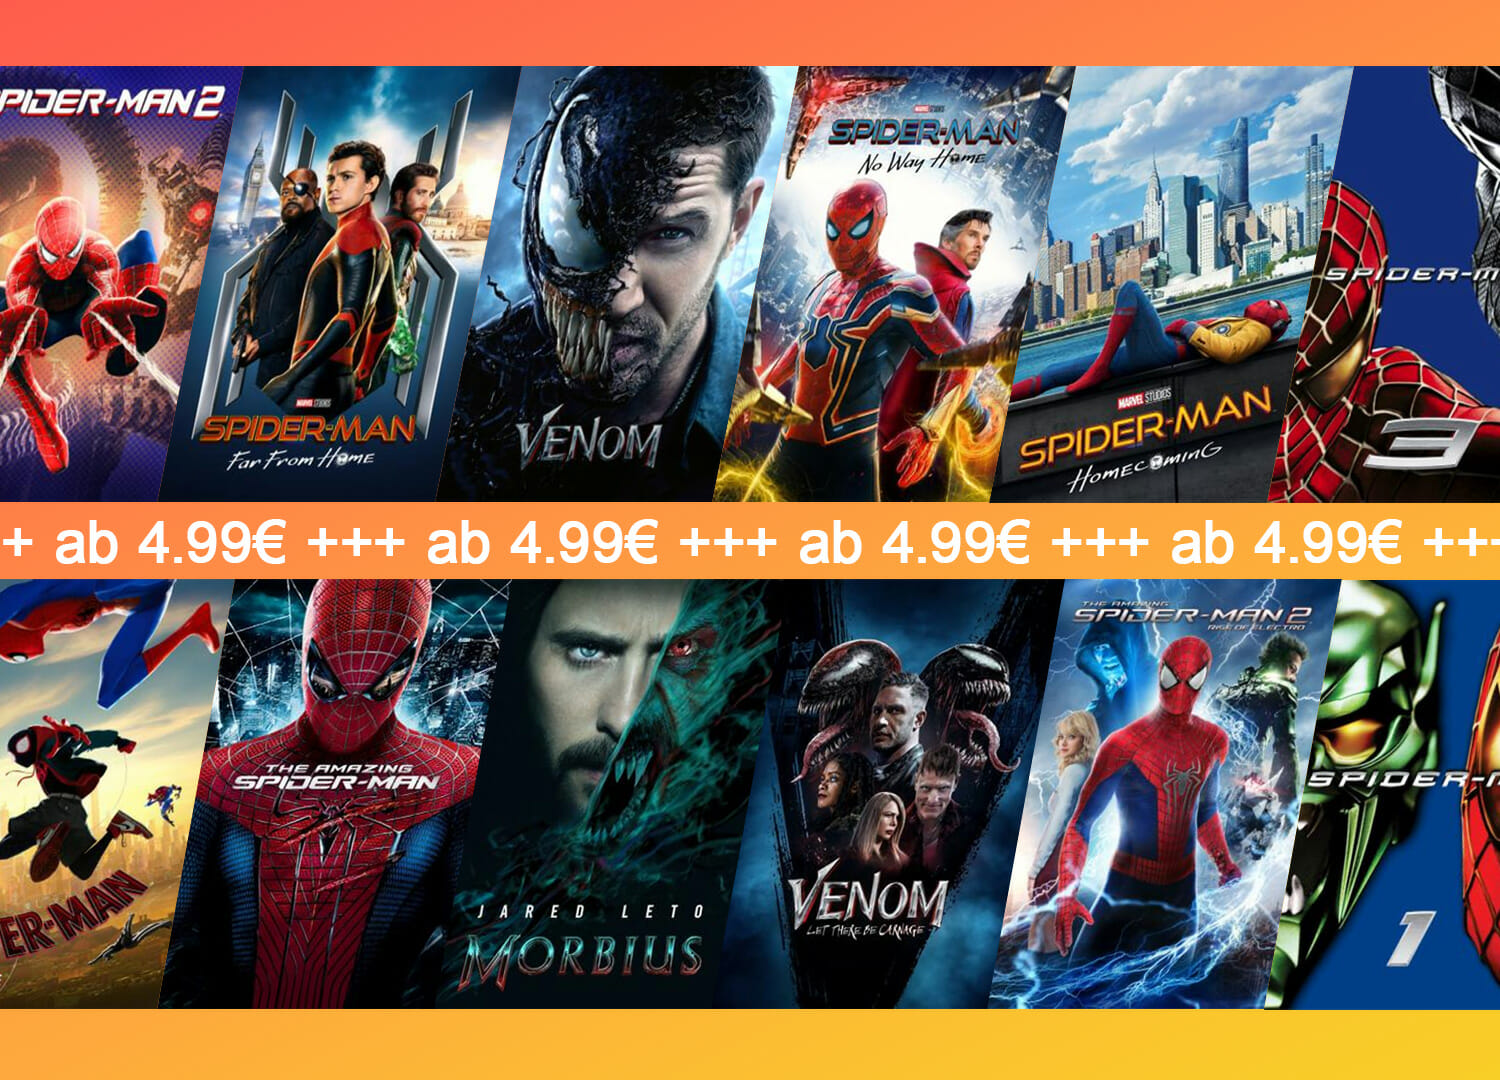 Apple-TV-Alle-Spider-Man-und-Venom-Filme-ab-4-99-Euro-in-4K